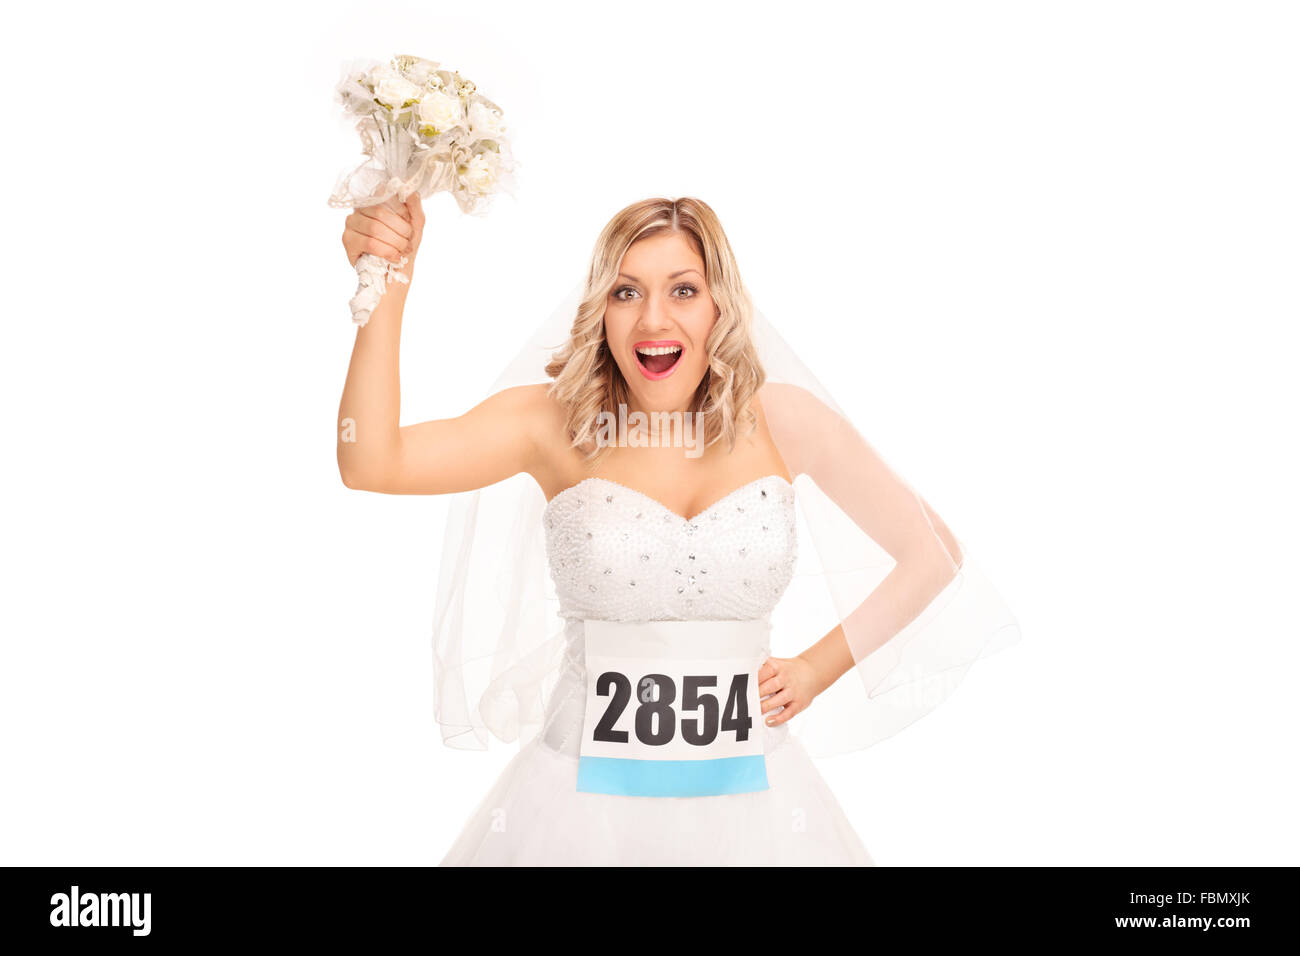 Portrait d'une jeune mariée avec un numéro de course tenant une fleur mariage isolé sur fond blanc Banque D'Images